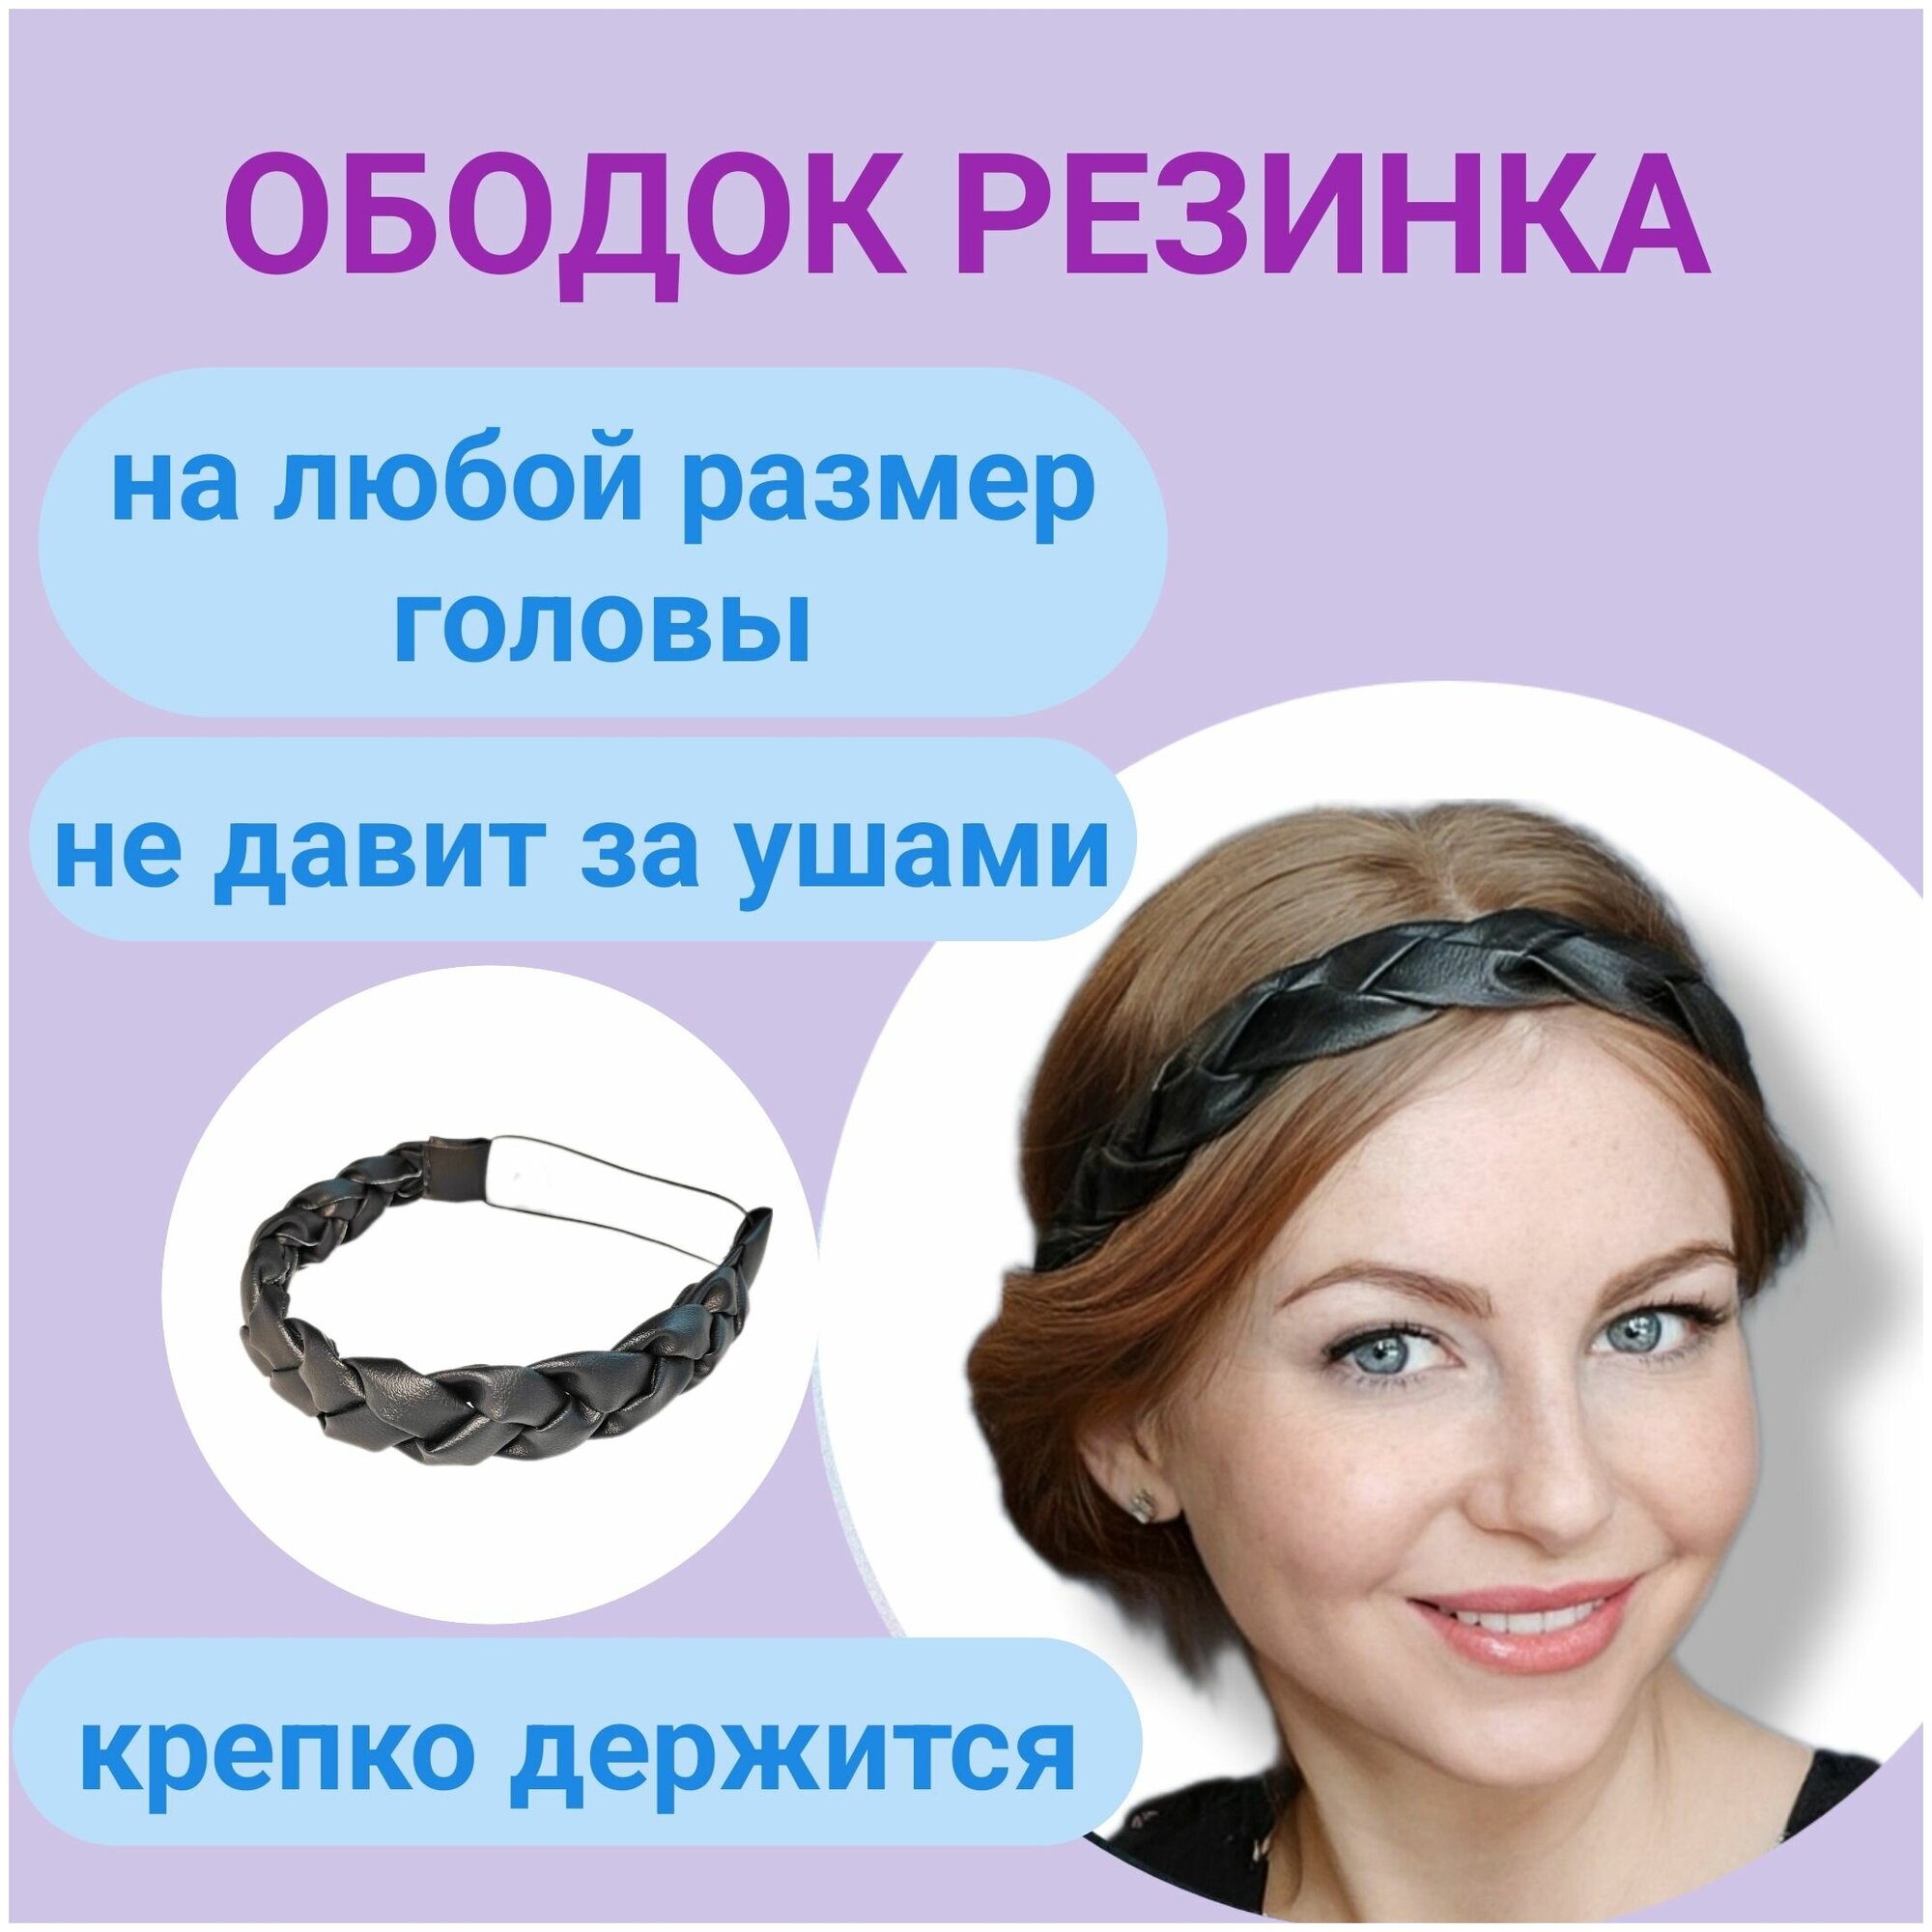 Ободок-резинка для волос женский, ободок косичка на резинке для греческой прически, ободок косичка на резинке -1 шт.